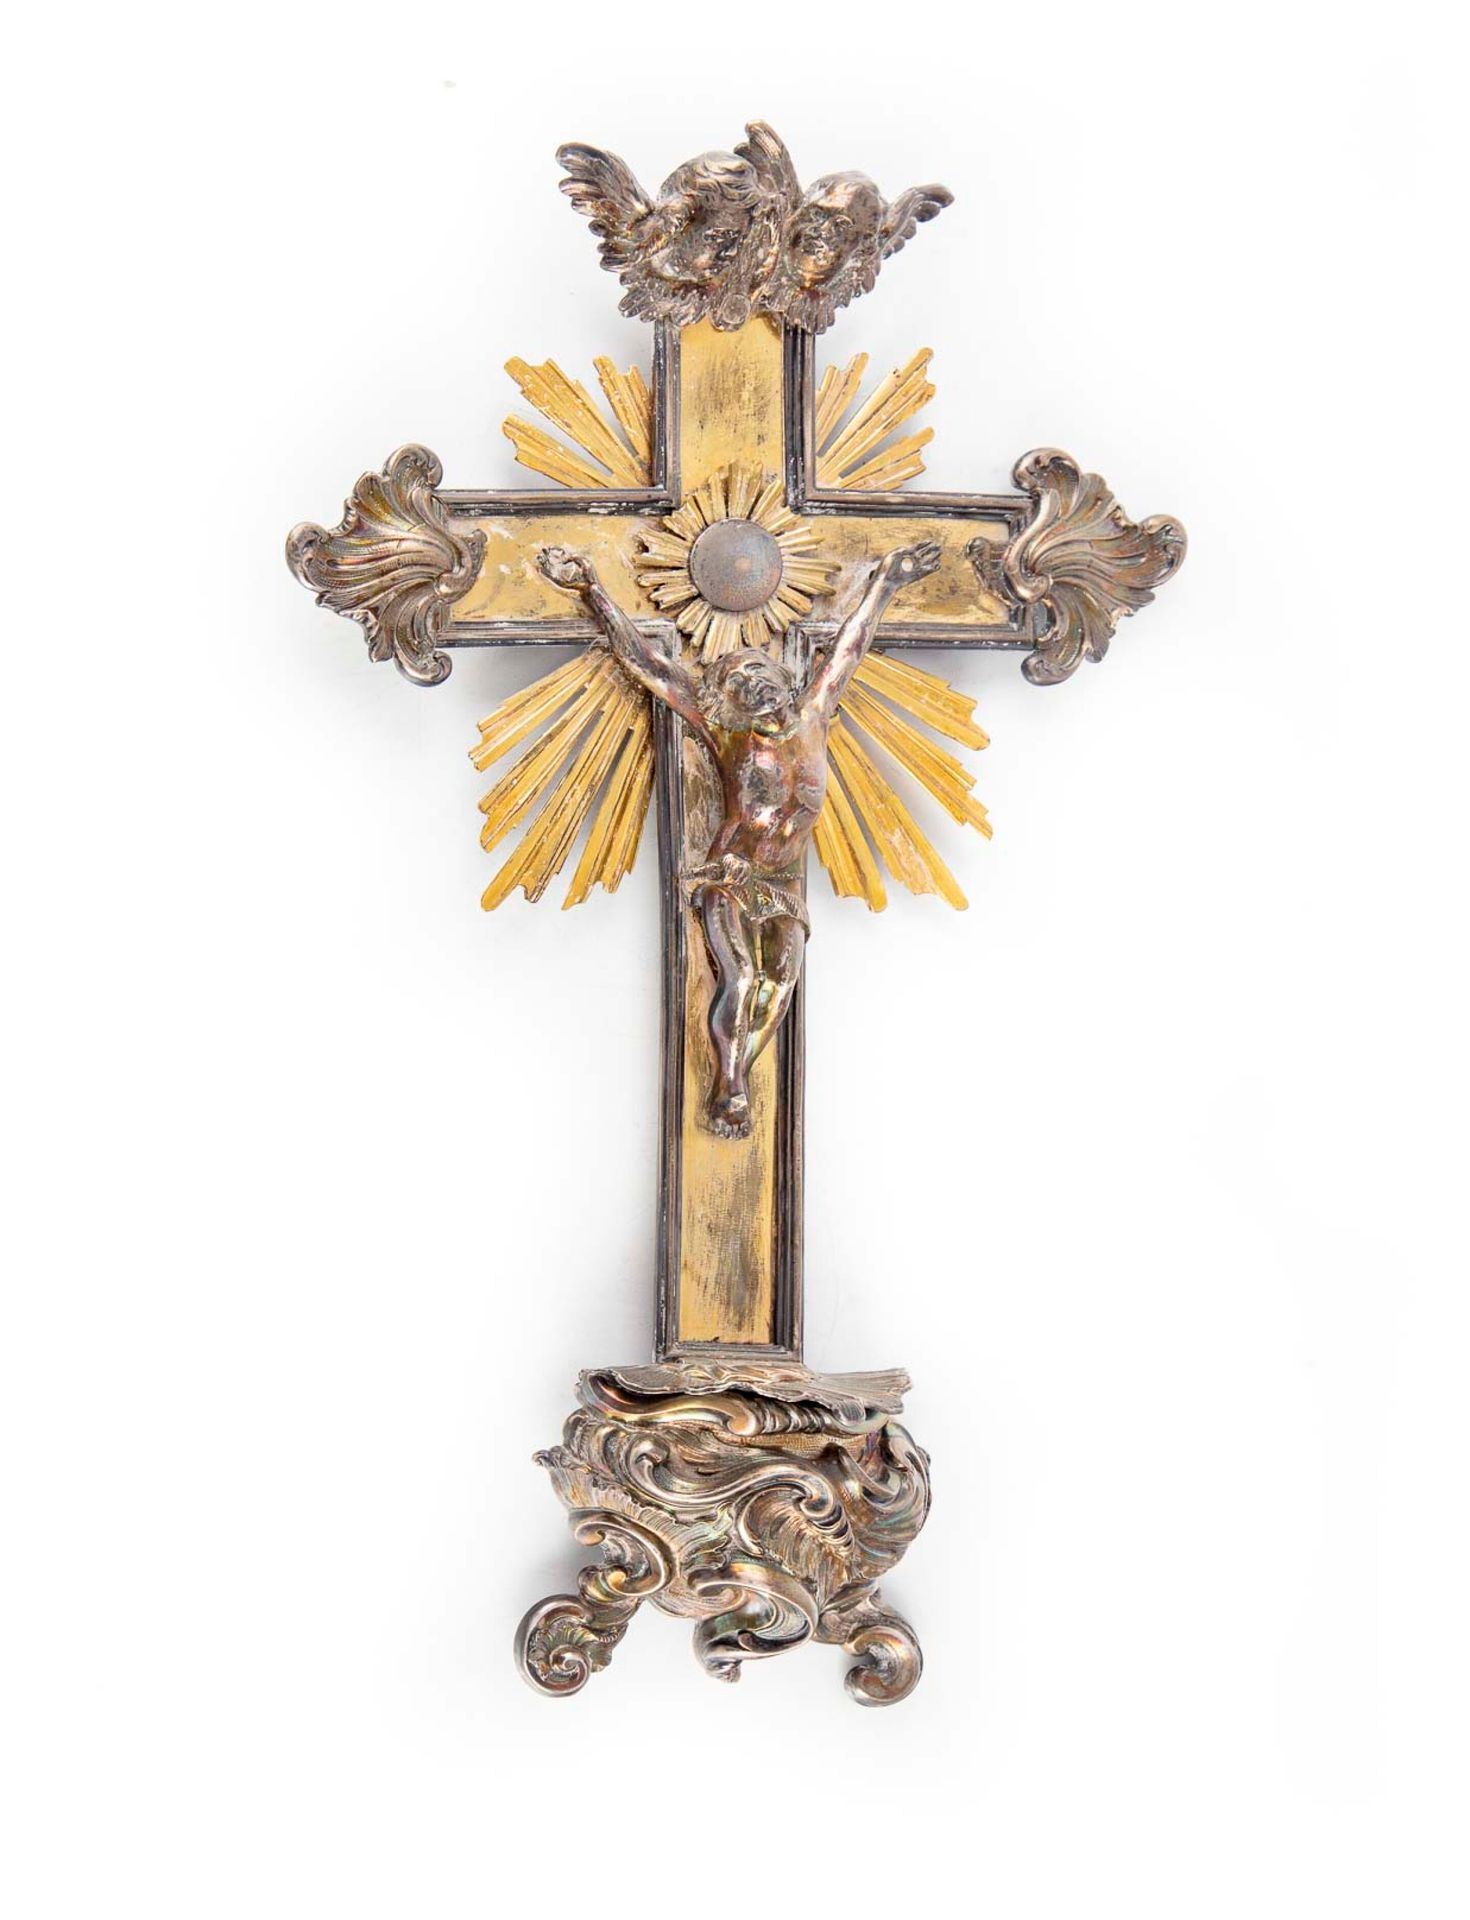 Null Kruzifix aus Silber und Messing

19. Jahrhundert

H. 37 cm